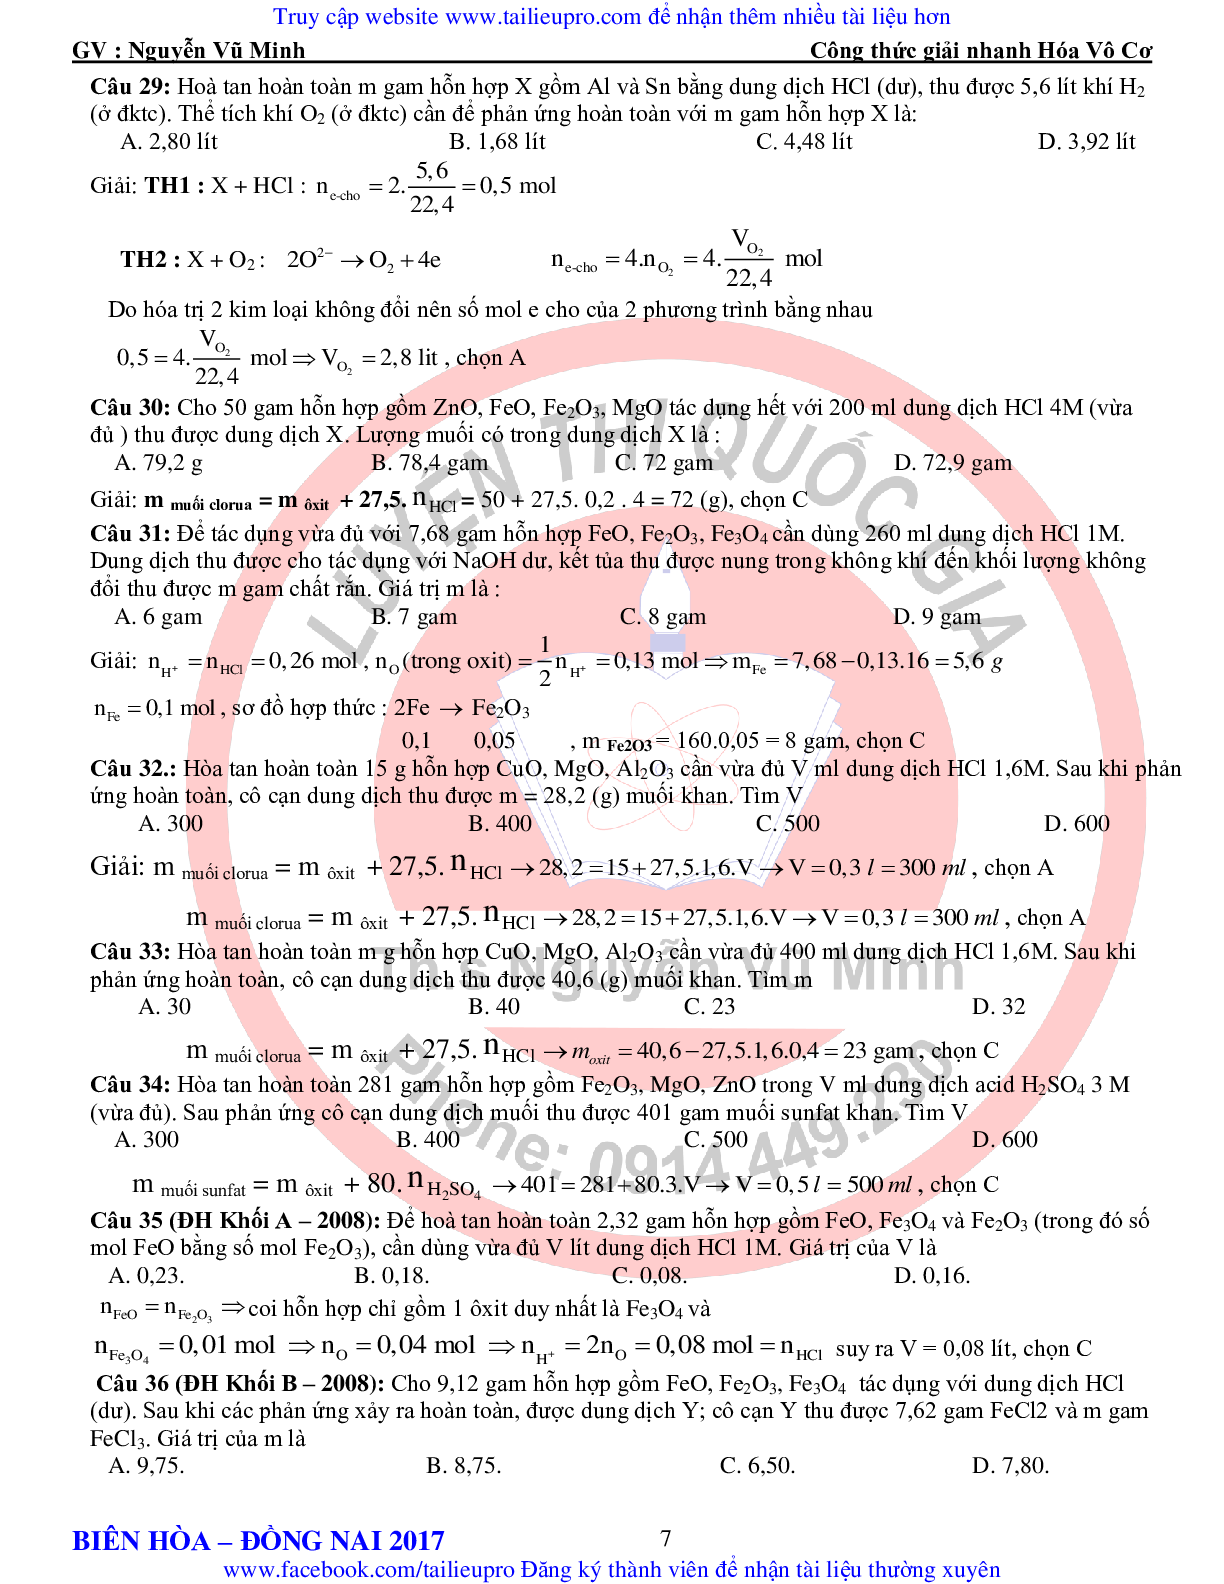 Tổng hợp công thức giải nhanh hóa vô cơ môn Hóa lớp 12 (trang 7)